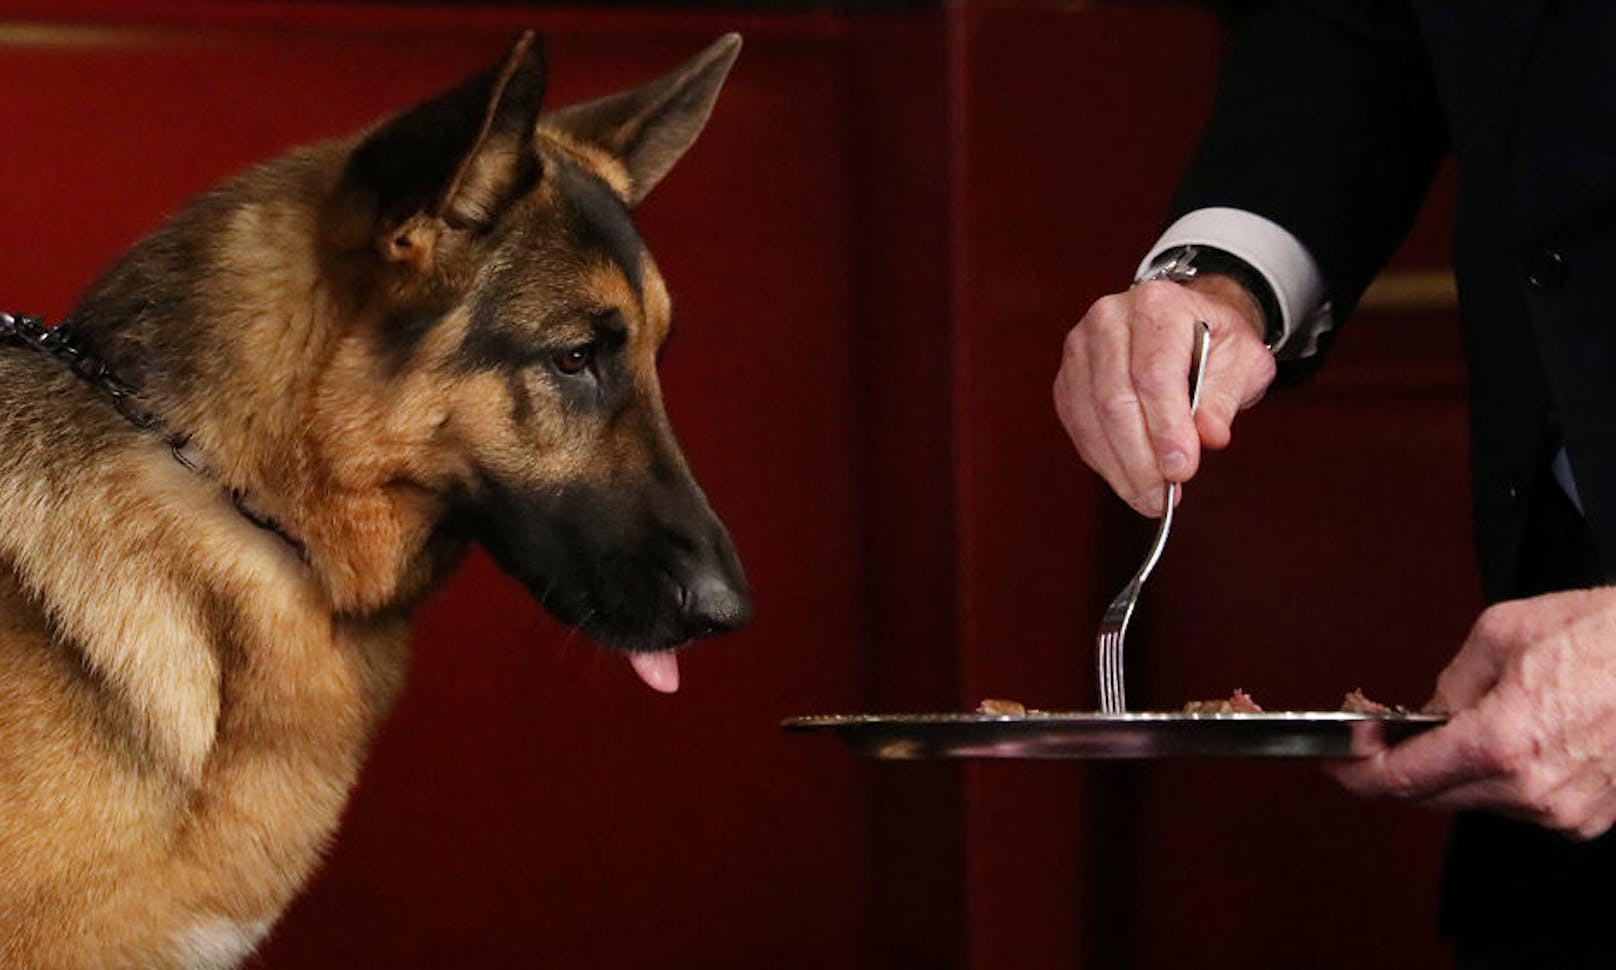 15.02.2017: Schäferhund "Rumor" ist der Gewinner der 141. Westminster Kennel Club-Hundeschau. Das saftige Steak hat er sich redlich verdient.